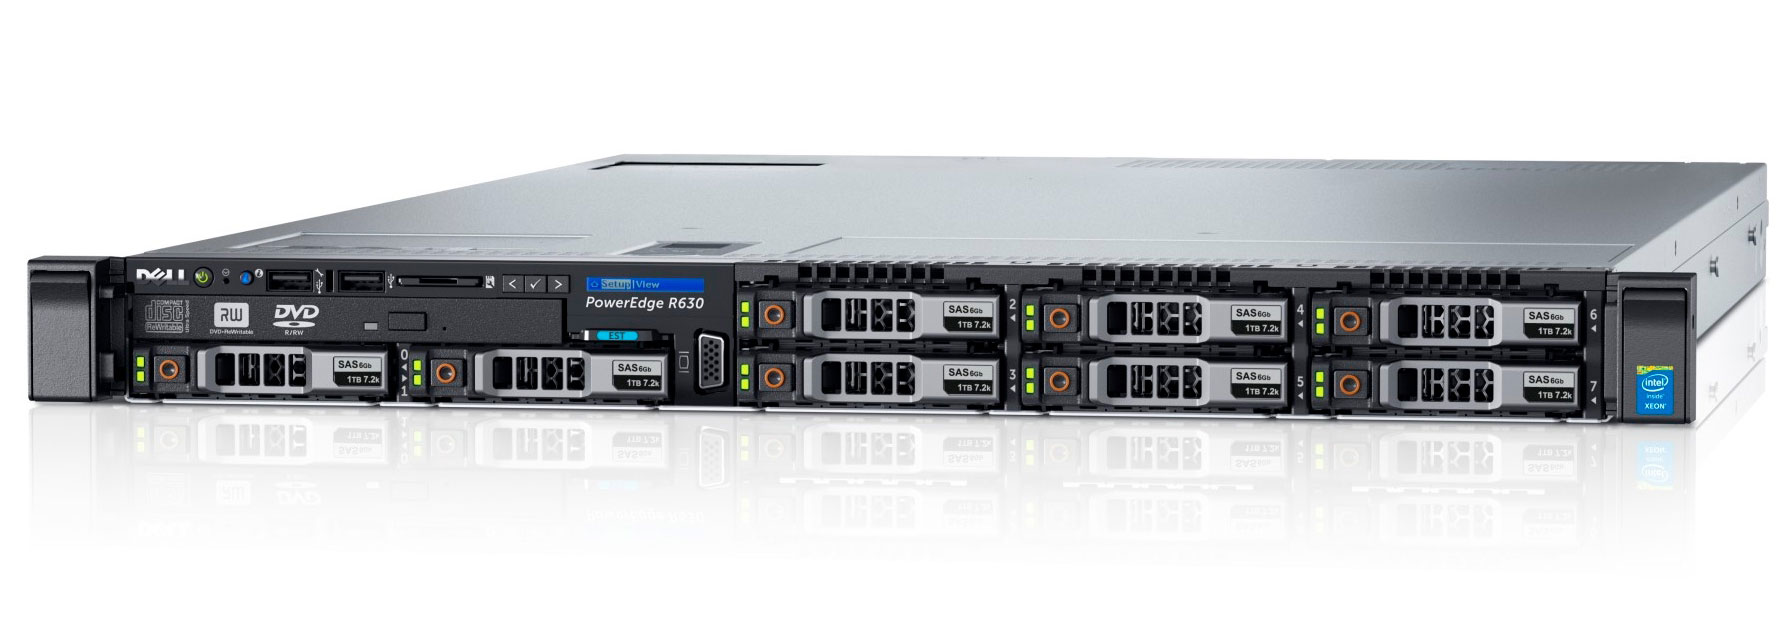 Подробное фото Сервер DELL PowerEdge R630 2*Xeon E5-2683v3 128Gb 2133P DDR4 8x noHDD 2.5", SAS RAID Perc H730, 1024Mb, DVD, 2*PSU